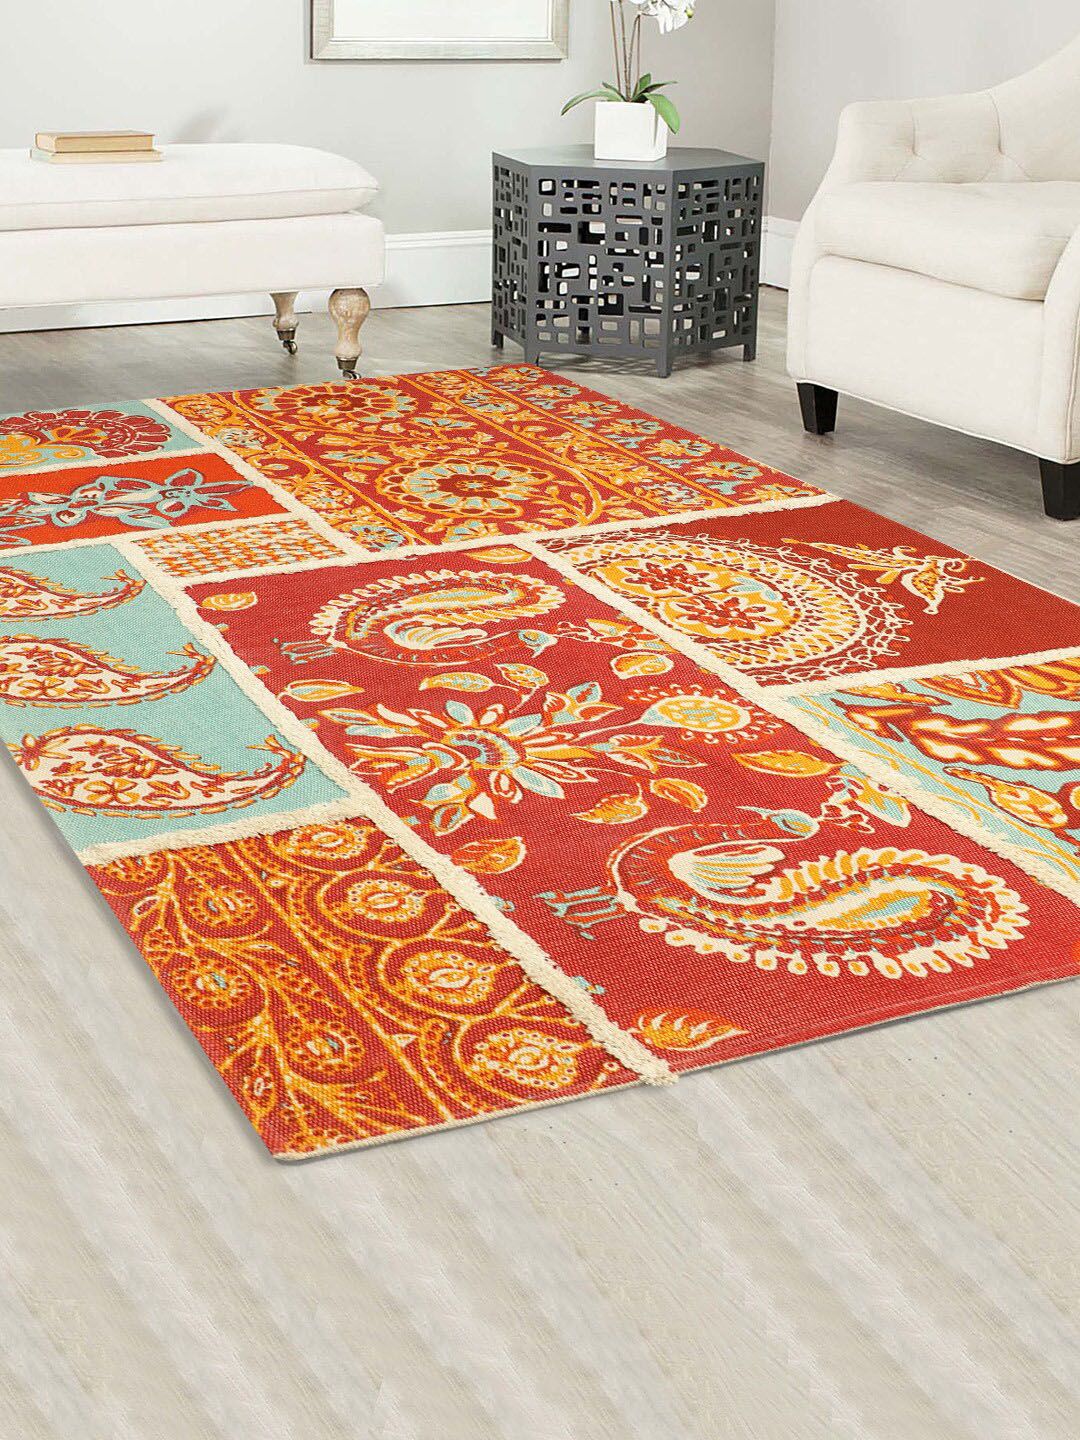 BLANC9 Multicolored Printed Cotton Rectangular Carpet Price in India